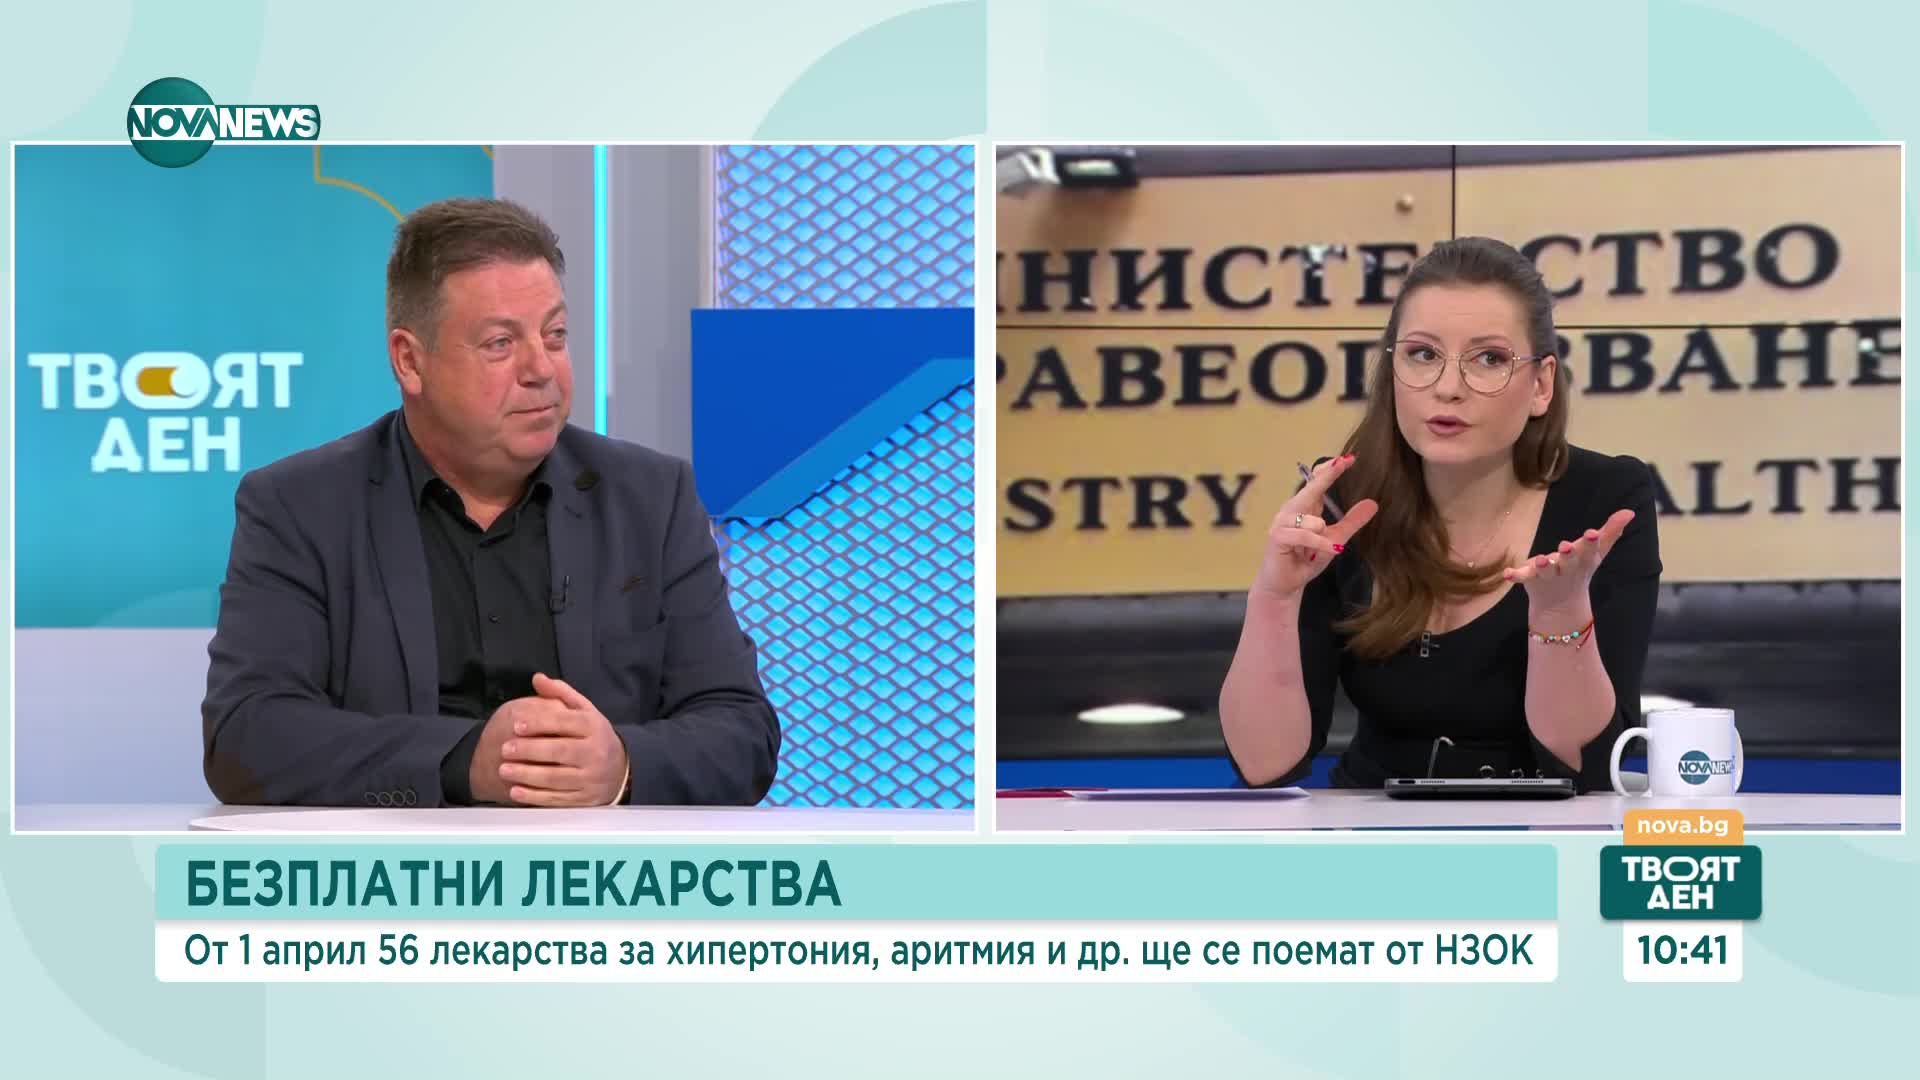 Маджаров: В здравеопазването трябва да има верификация на плащането и нотификация, че се е състояло